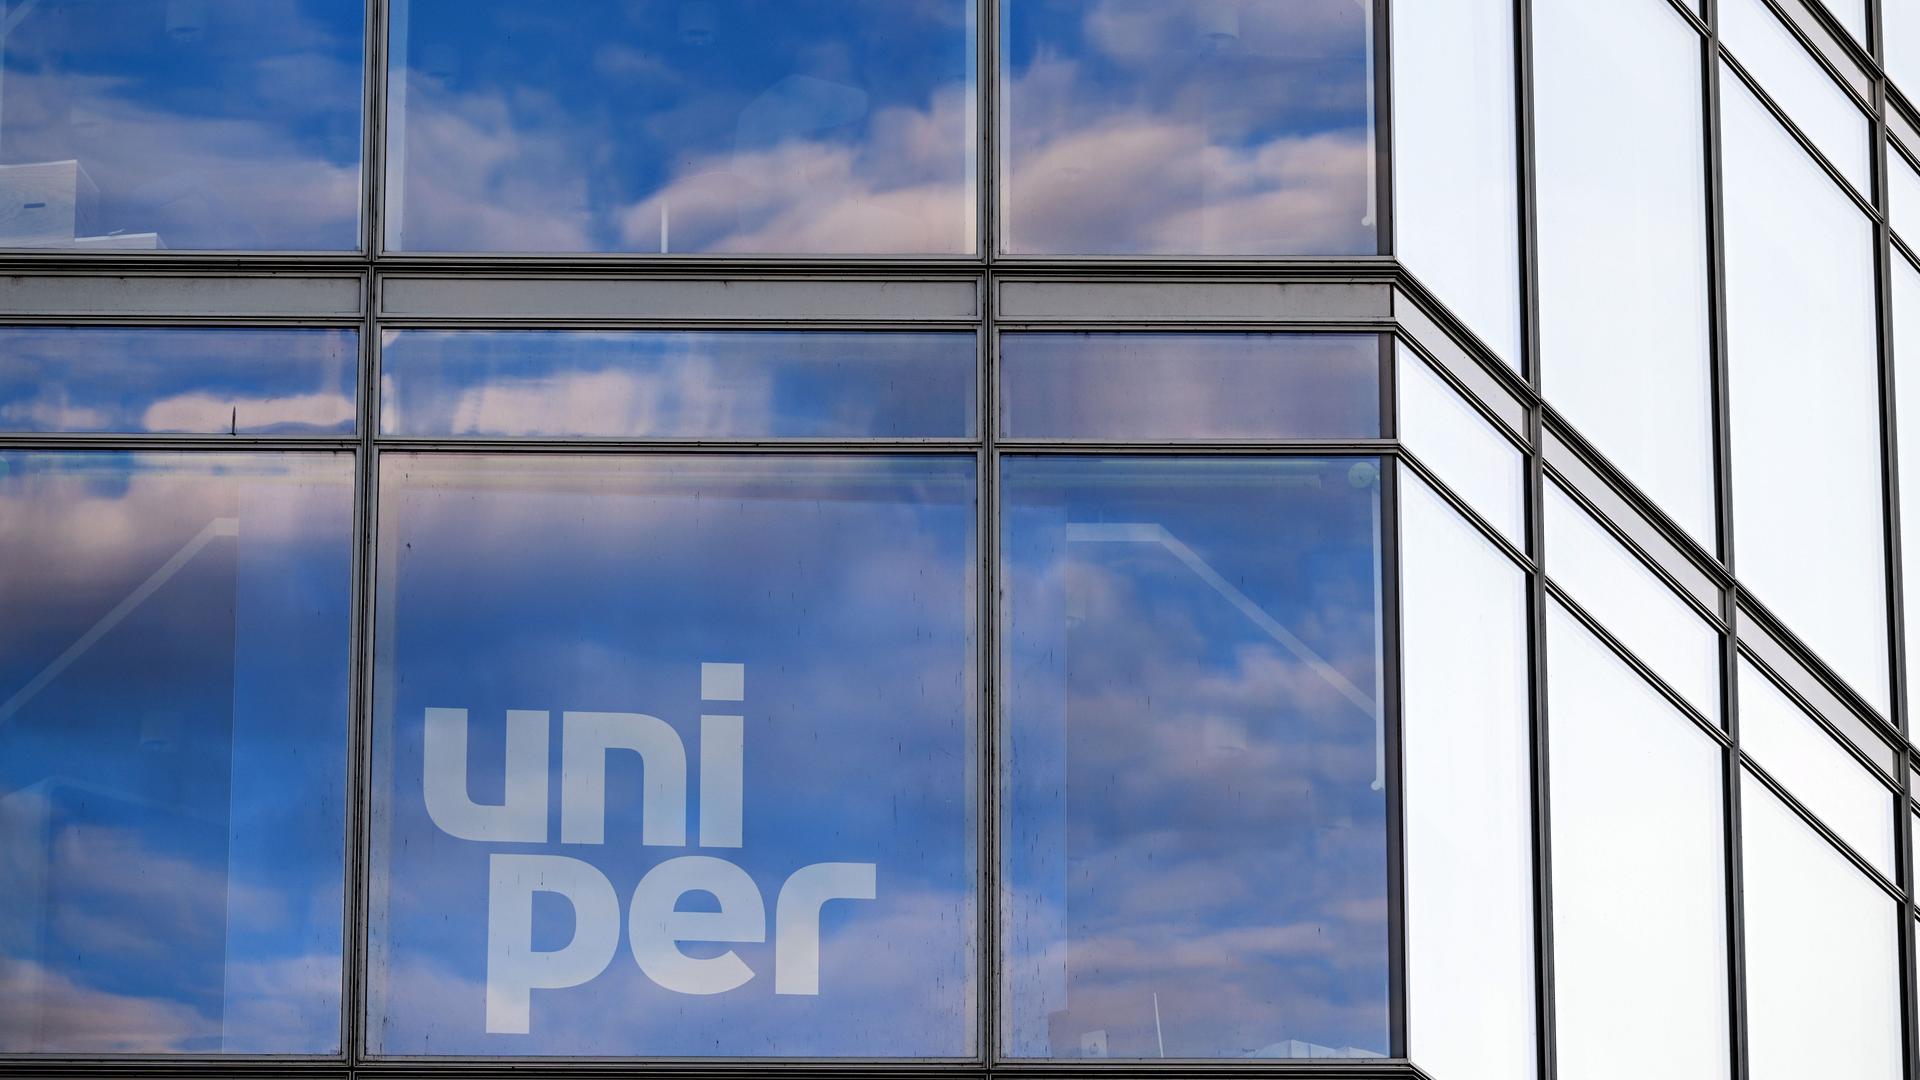 Wolken spiegeln sich in Glas-Scheiben. Da ist der Namen "Uniper" zu lesen.